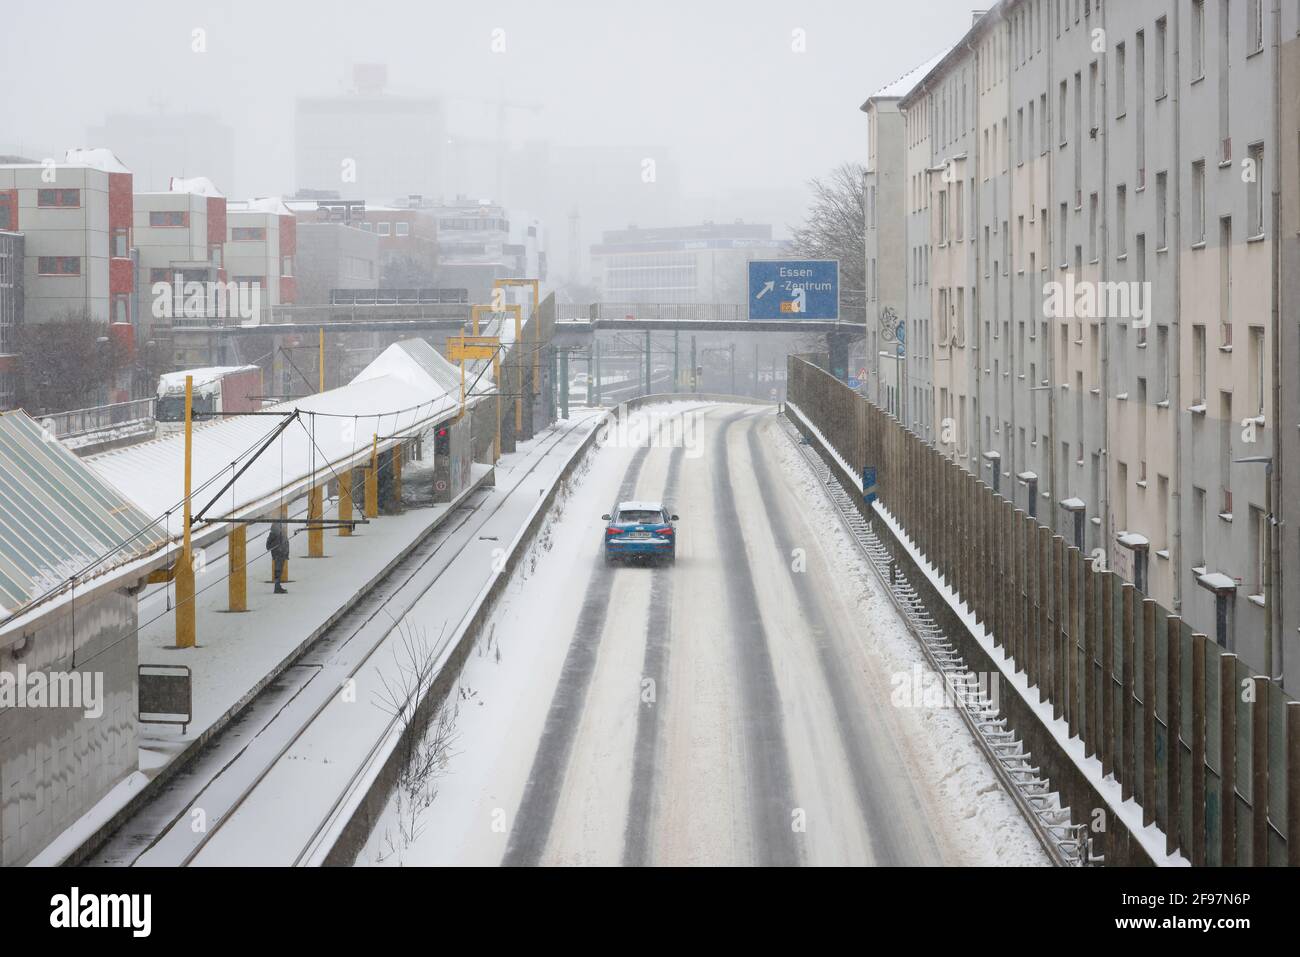 Essen, Renania Settentrionale-Vestfalia, Germania - inizio dell'inverno nella zona della Ruhr, poche auto guidano sull'autostrada A40 in ghiaccio e neve. Foto Stock